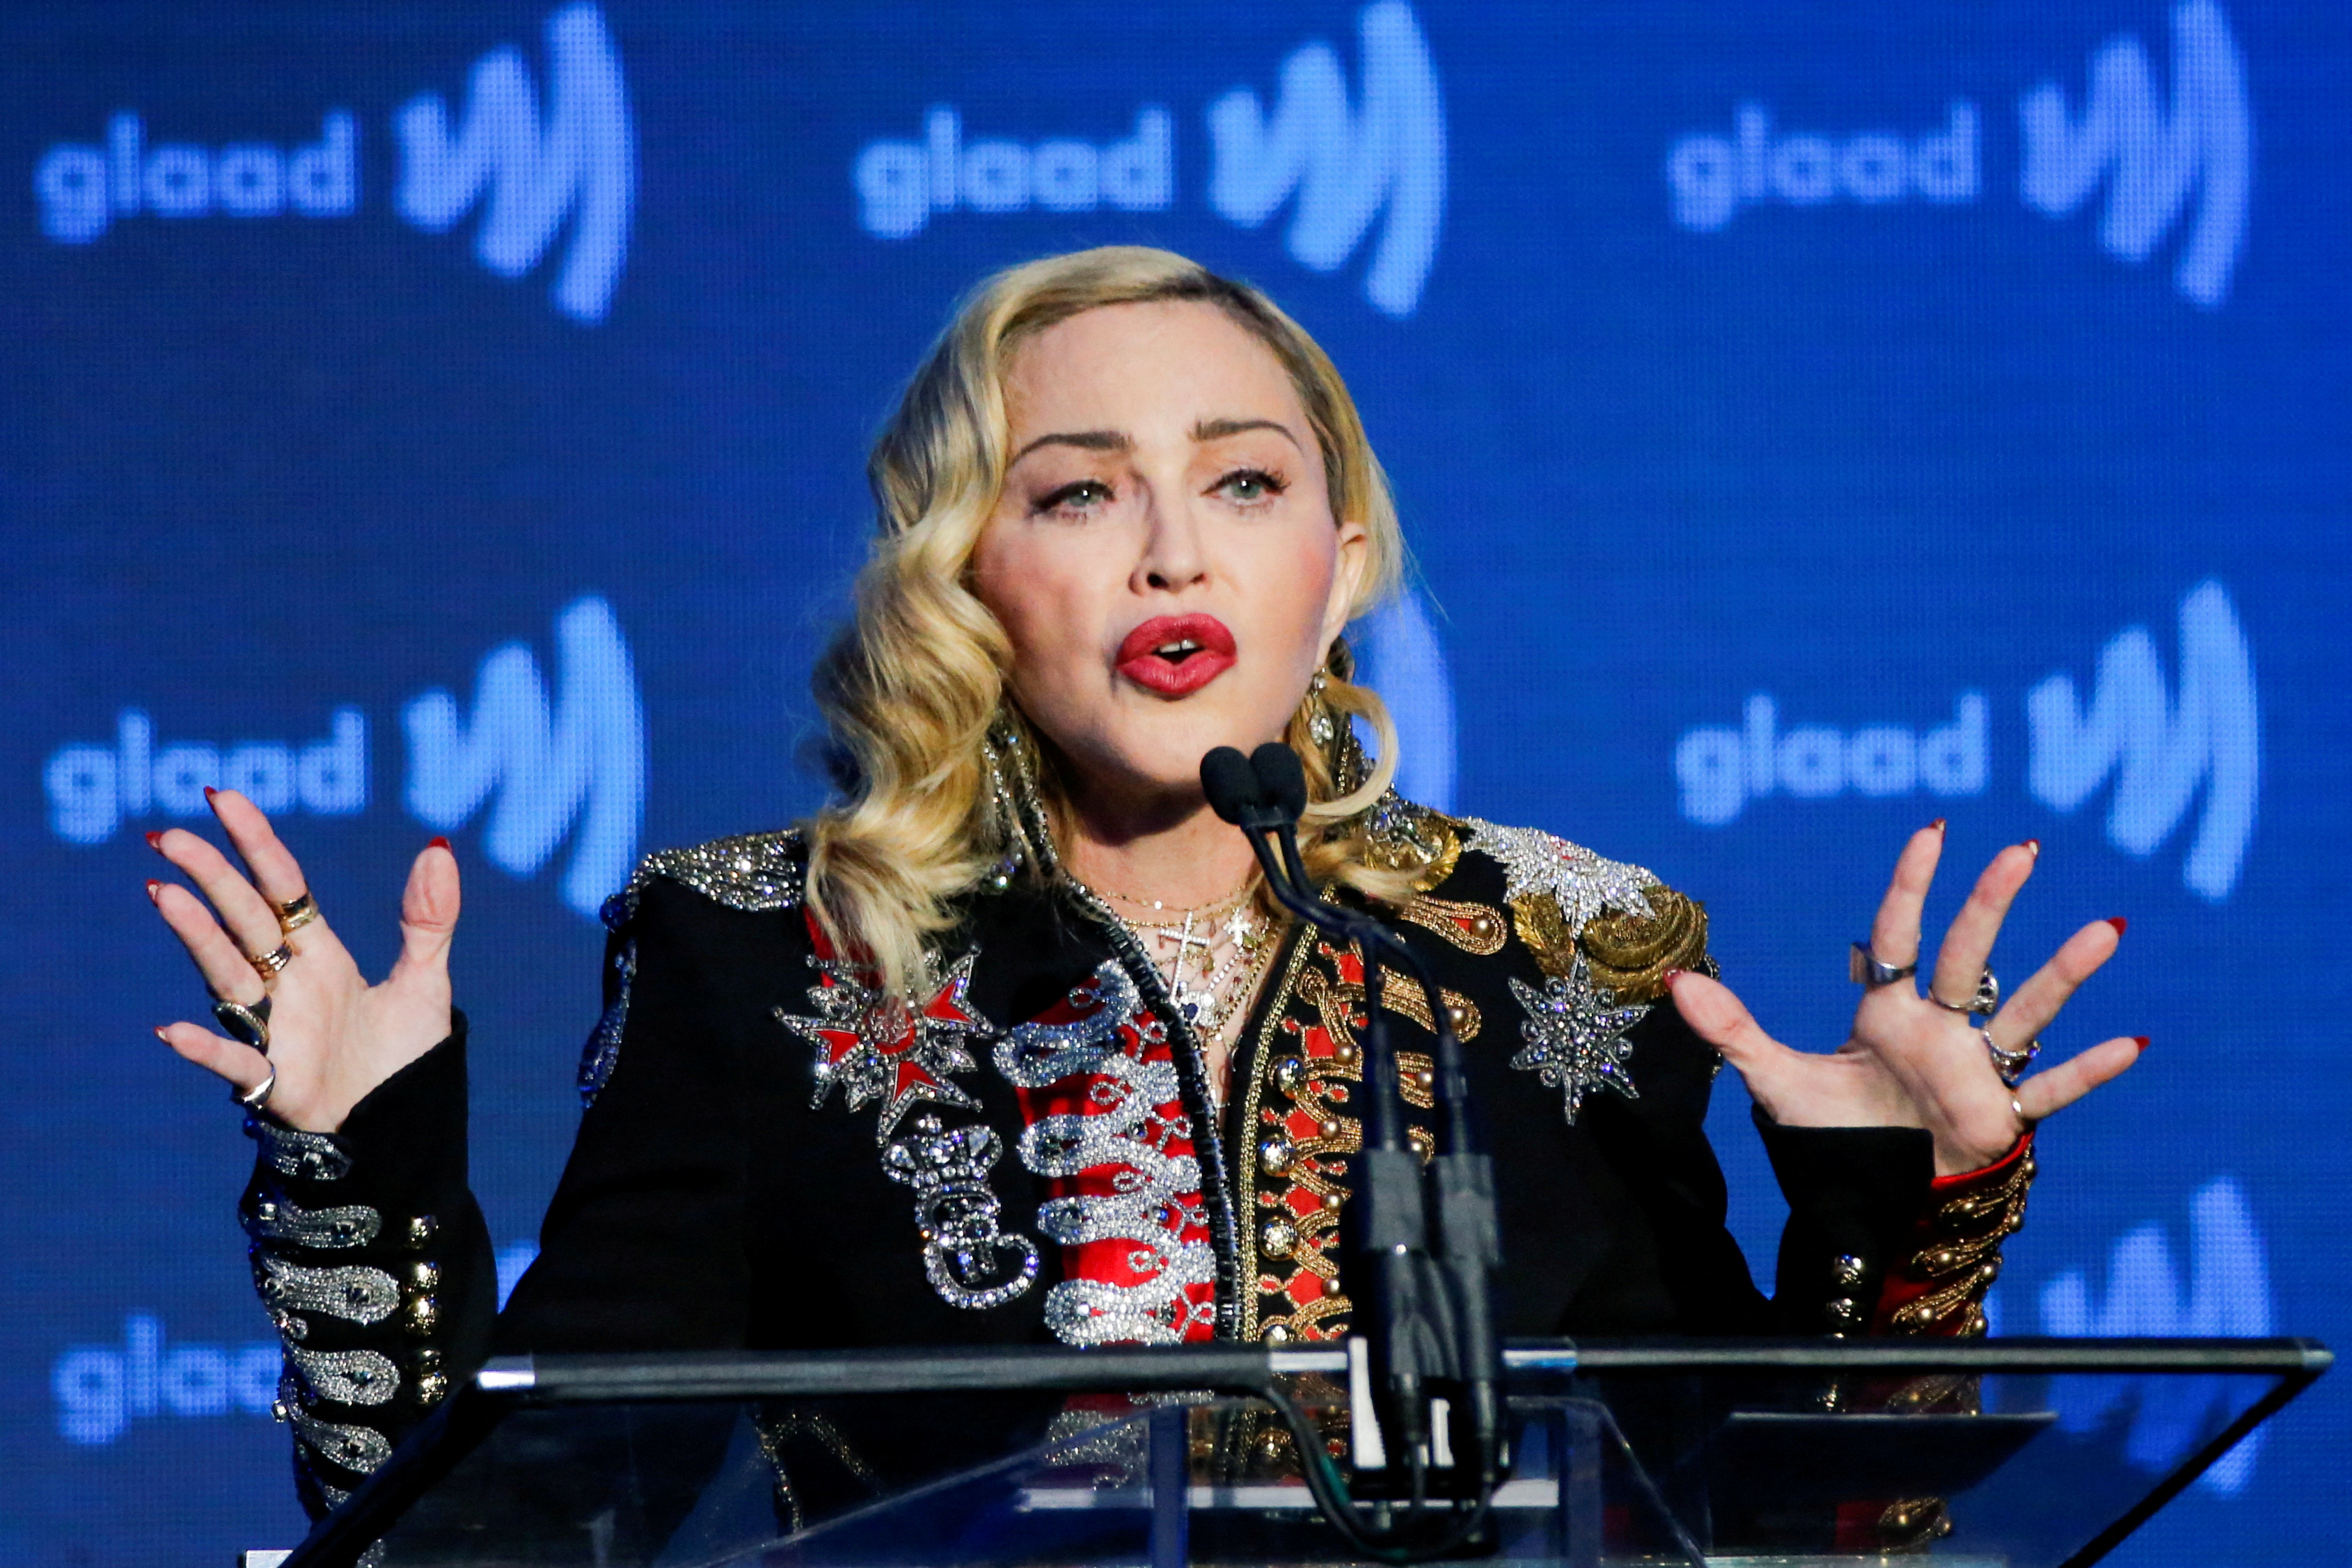 Hasta Madonna entró al challenge mexicano de bailar cumbias con un filtro (Foto: REUTERS/Eduardo Munoz)